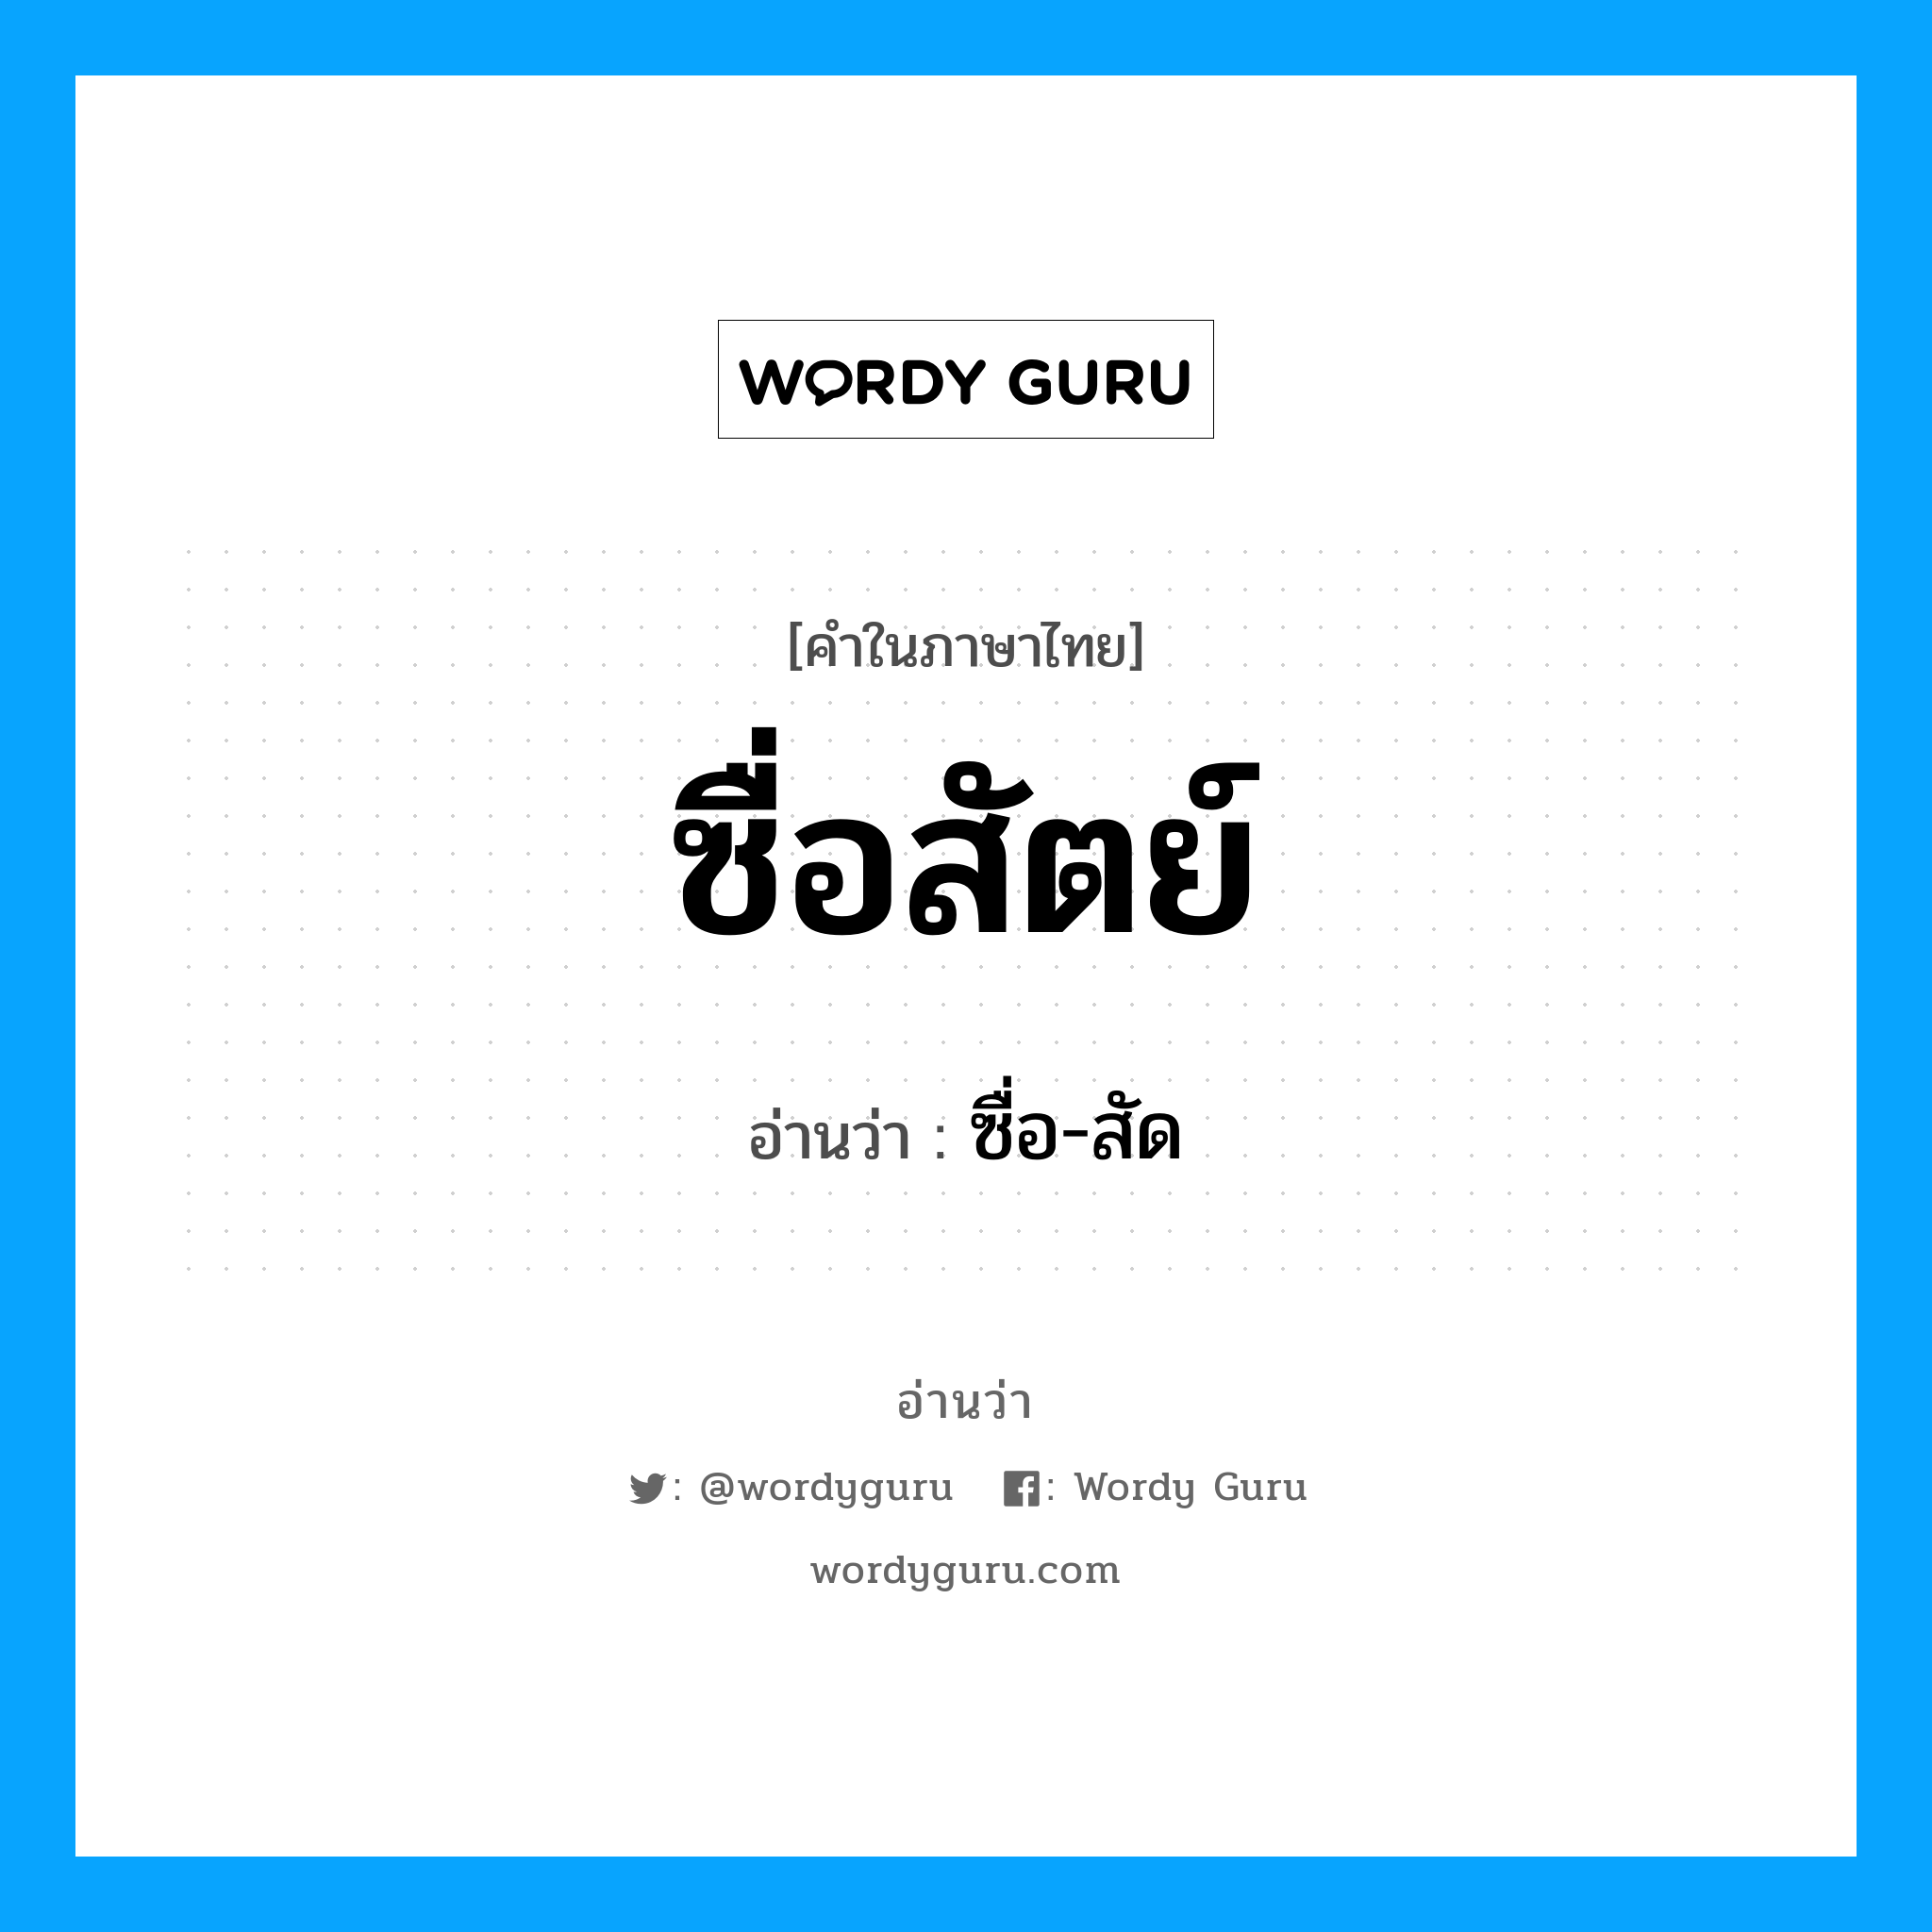 ซื่อ-สัด เป็นคำอ่านของคำไหน?, คำในภาษาไทย ซื่อ-สัด อ่านว่า ซื่อสัตย์